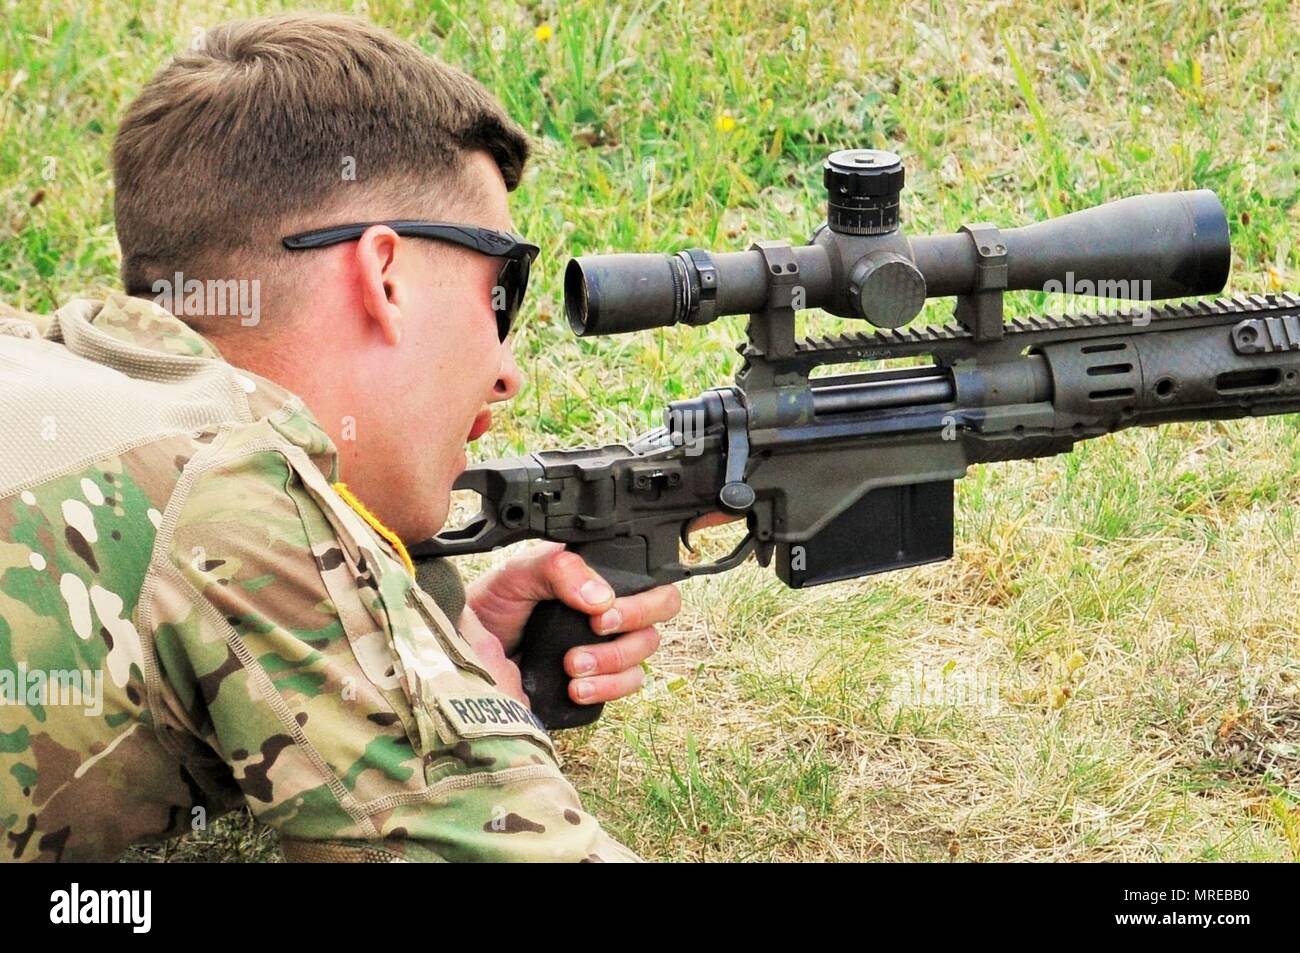 Espace lunette/canon Pologne-groupe-de-combat-des-soldats-americains-l-incendie-m2010-fusil-ameliore-pres-de-la-zone-d-entrainement-au-cours-de-bemowo-piskie-greve-sabre-17-juin-8-2017-greve-17-sabre-de-l-armee-americaine-est-une-force-multinationale-de-l-europe-exercer-des-forces-combinees-menee-chaque-annee-pour-renforcer-l-alliance-de-l-otan-dans-la-region-de-la-baltique-et-de-la-pologne-l-exercice-de-cette-annee-comprend-et-integre-de-formation-axes-sur-la-dissuasion-synchronise-concu-pour-ameliorer-l-interoperabilite-et-a-l-etat-de-preparation-des-forces-militaires-des-nations-unies-participantes-20-u-s-photo-de-l-armee-de-charles-rosemond-formation-support-team-orzysz-mrebb0